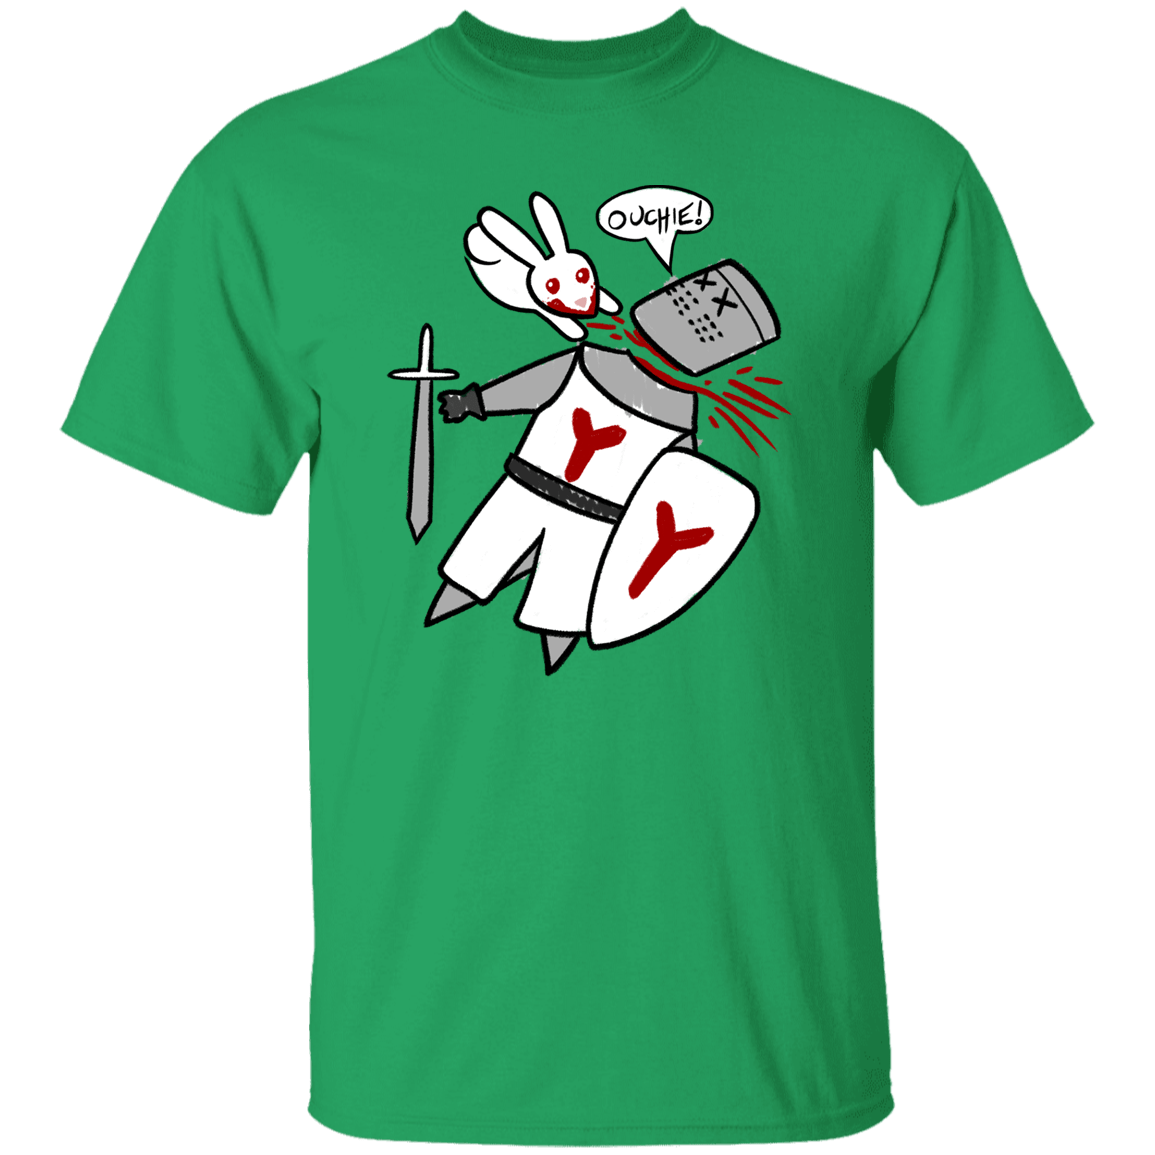 T-Shirts Irish Green / S Ouchie Cute T-Shirt